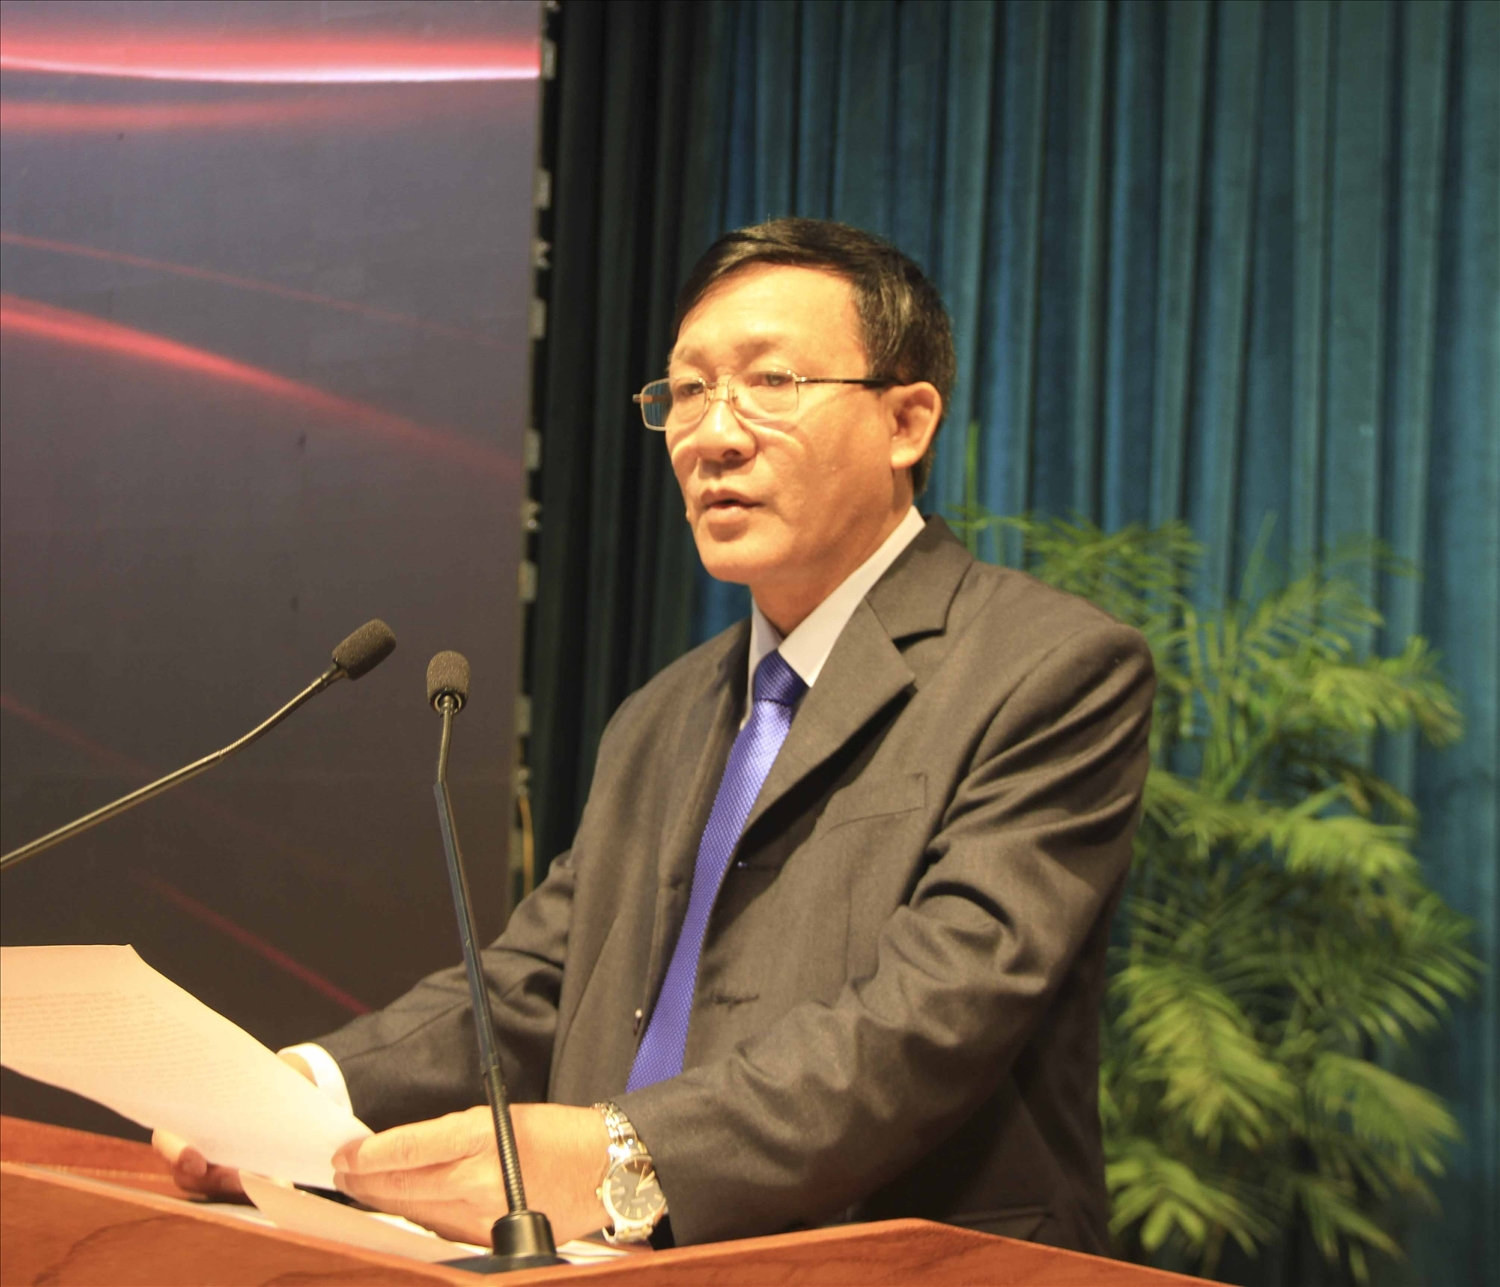 Ông Tạ Xuân Chánh, Giám đốc Sở Văn hóa Thể thao Bình Định phát biểu tại Lễ bế mạc Liên hoan